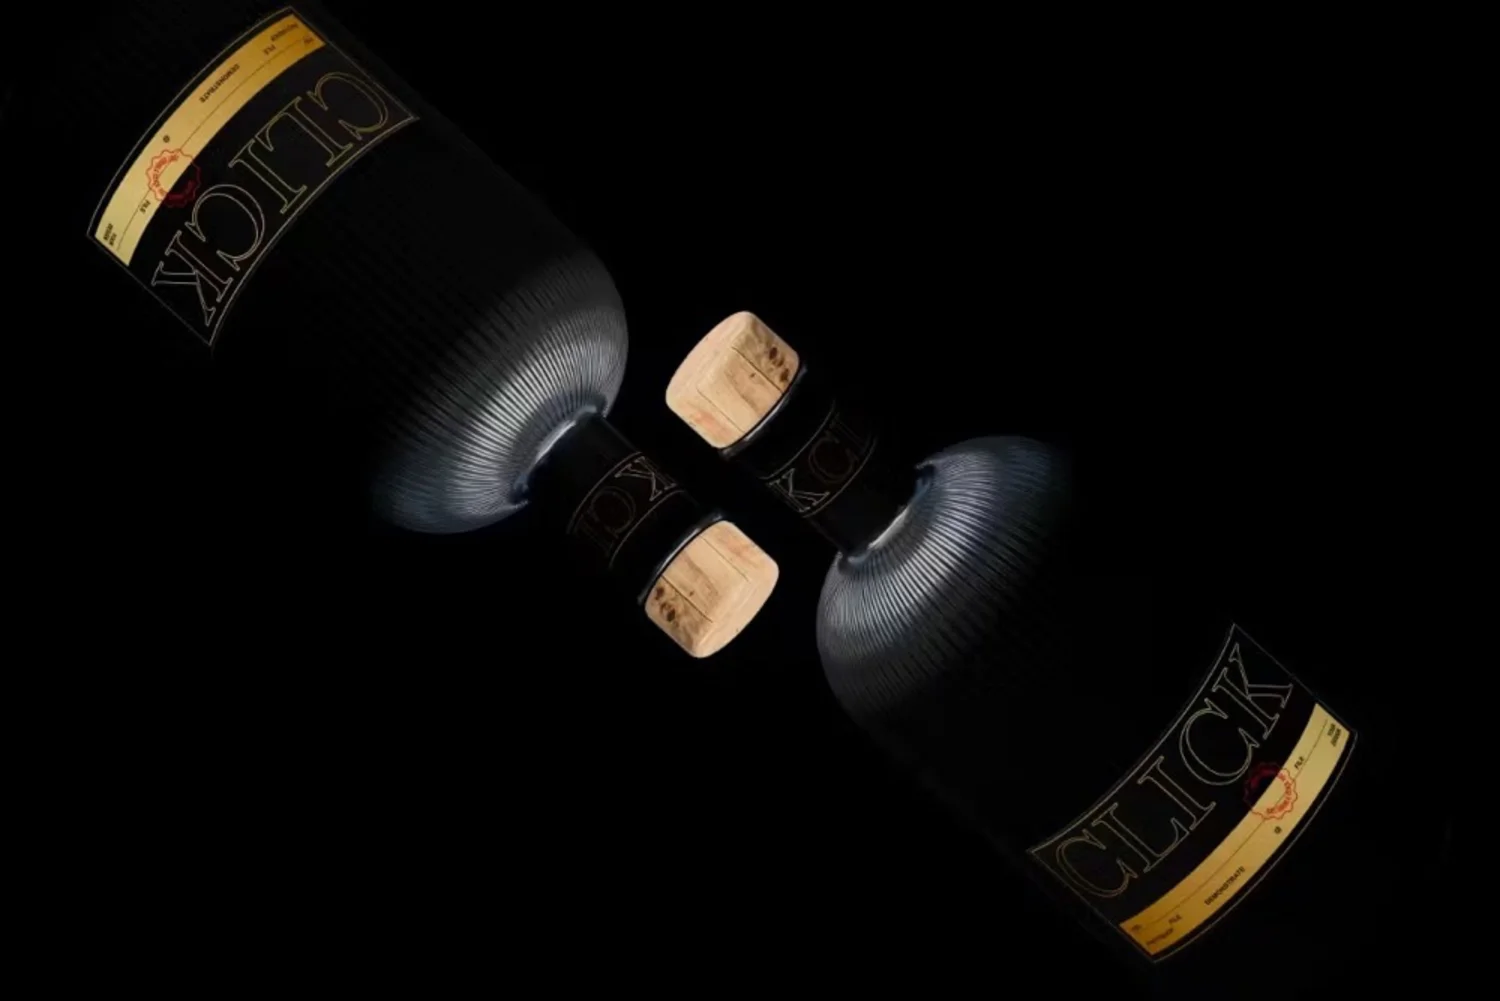 5026 8款时尚鸡尾酒洋酒调酒玻璃酒瓶酒标设计ps样机素材展示效果图 Gin Bottle Mockup Set@GOOODME.COM